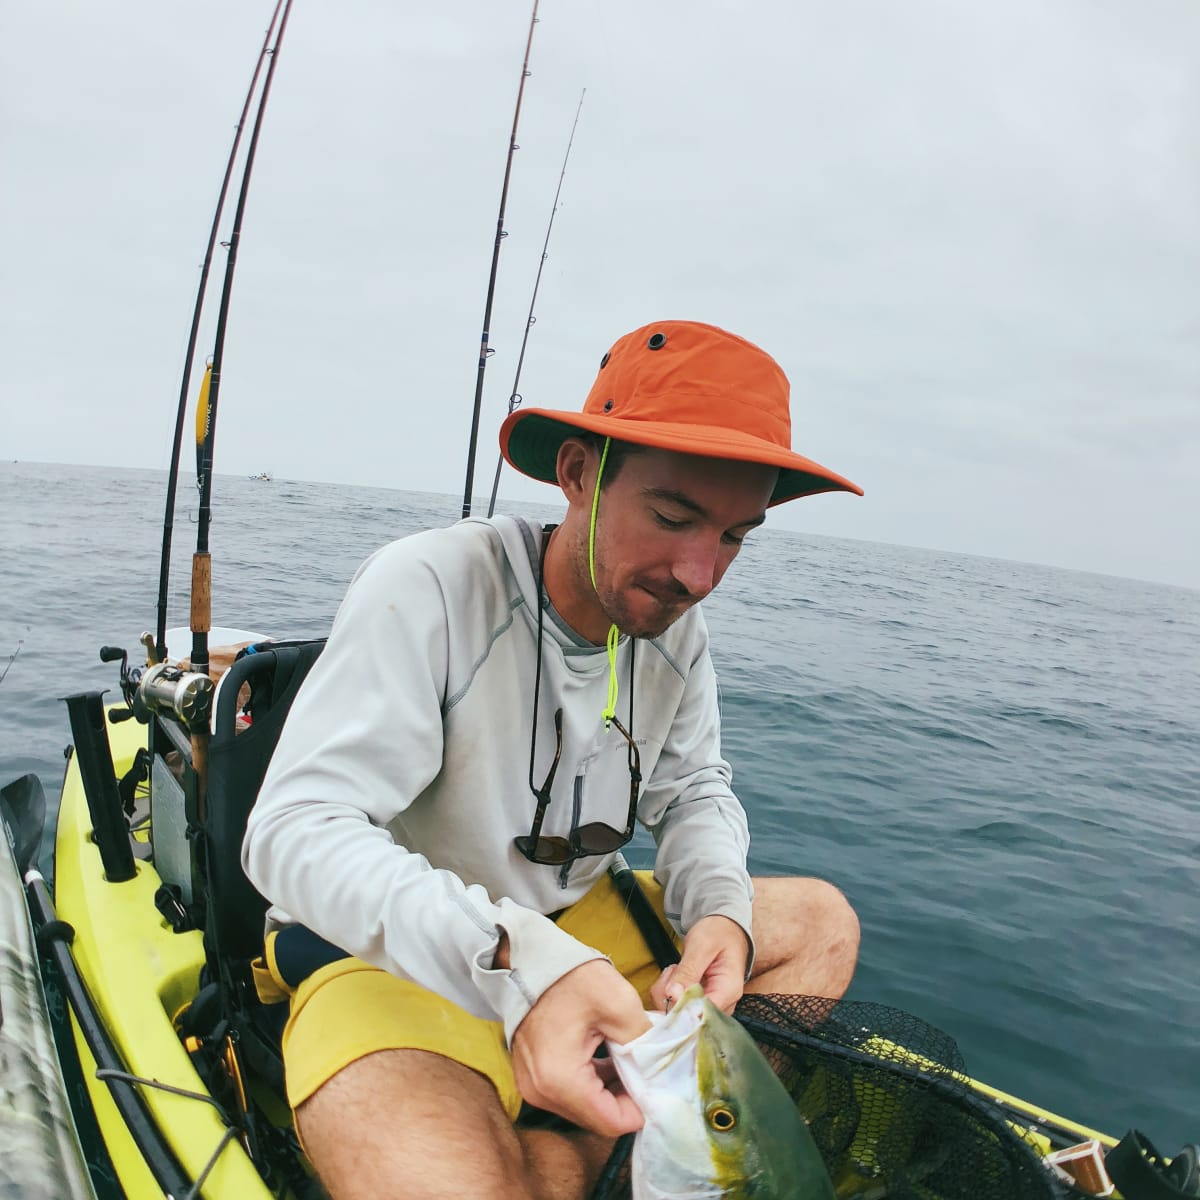 Tilley Paddler's Hat: The Kayak Angler's Hat - Men's Journal